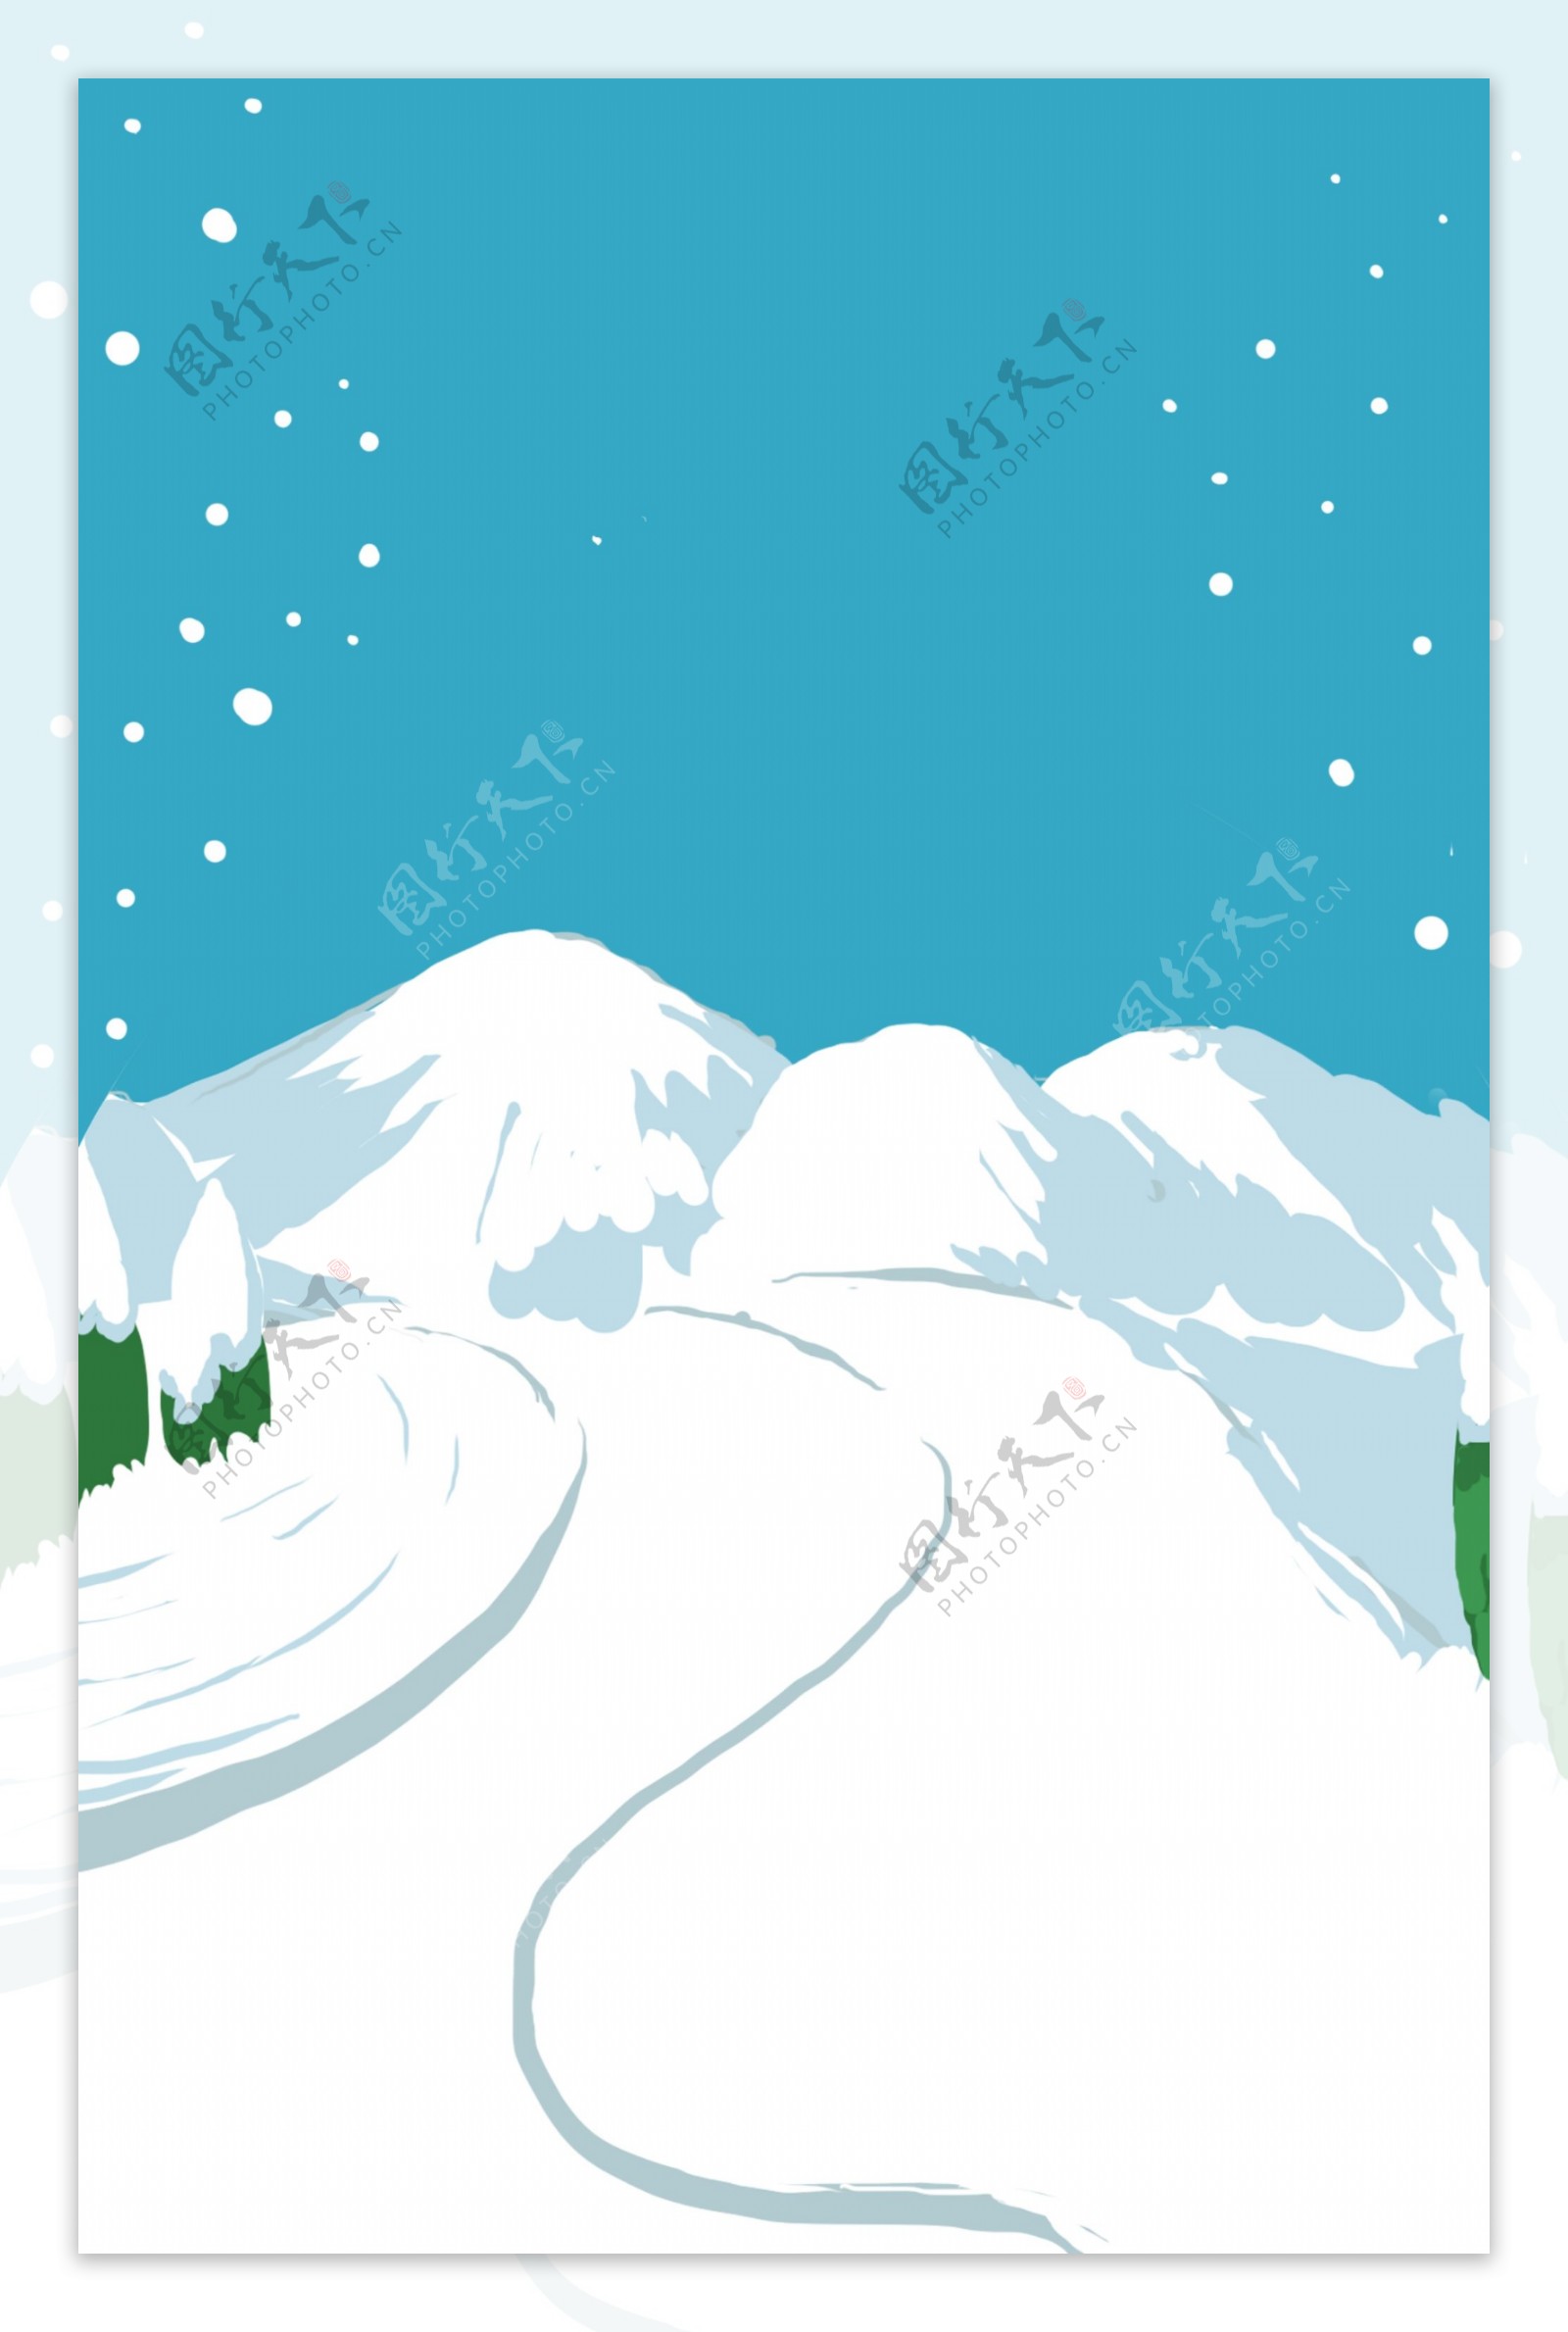 冬至节气雪山雪景背景设计